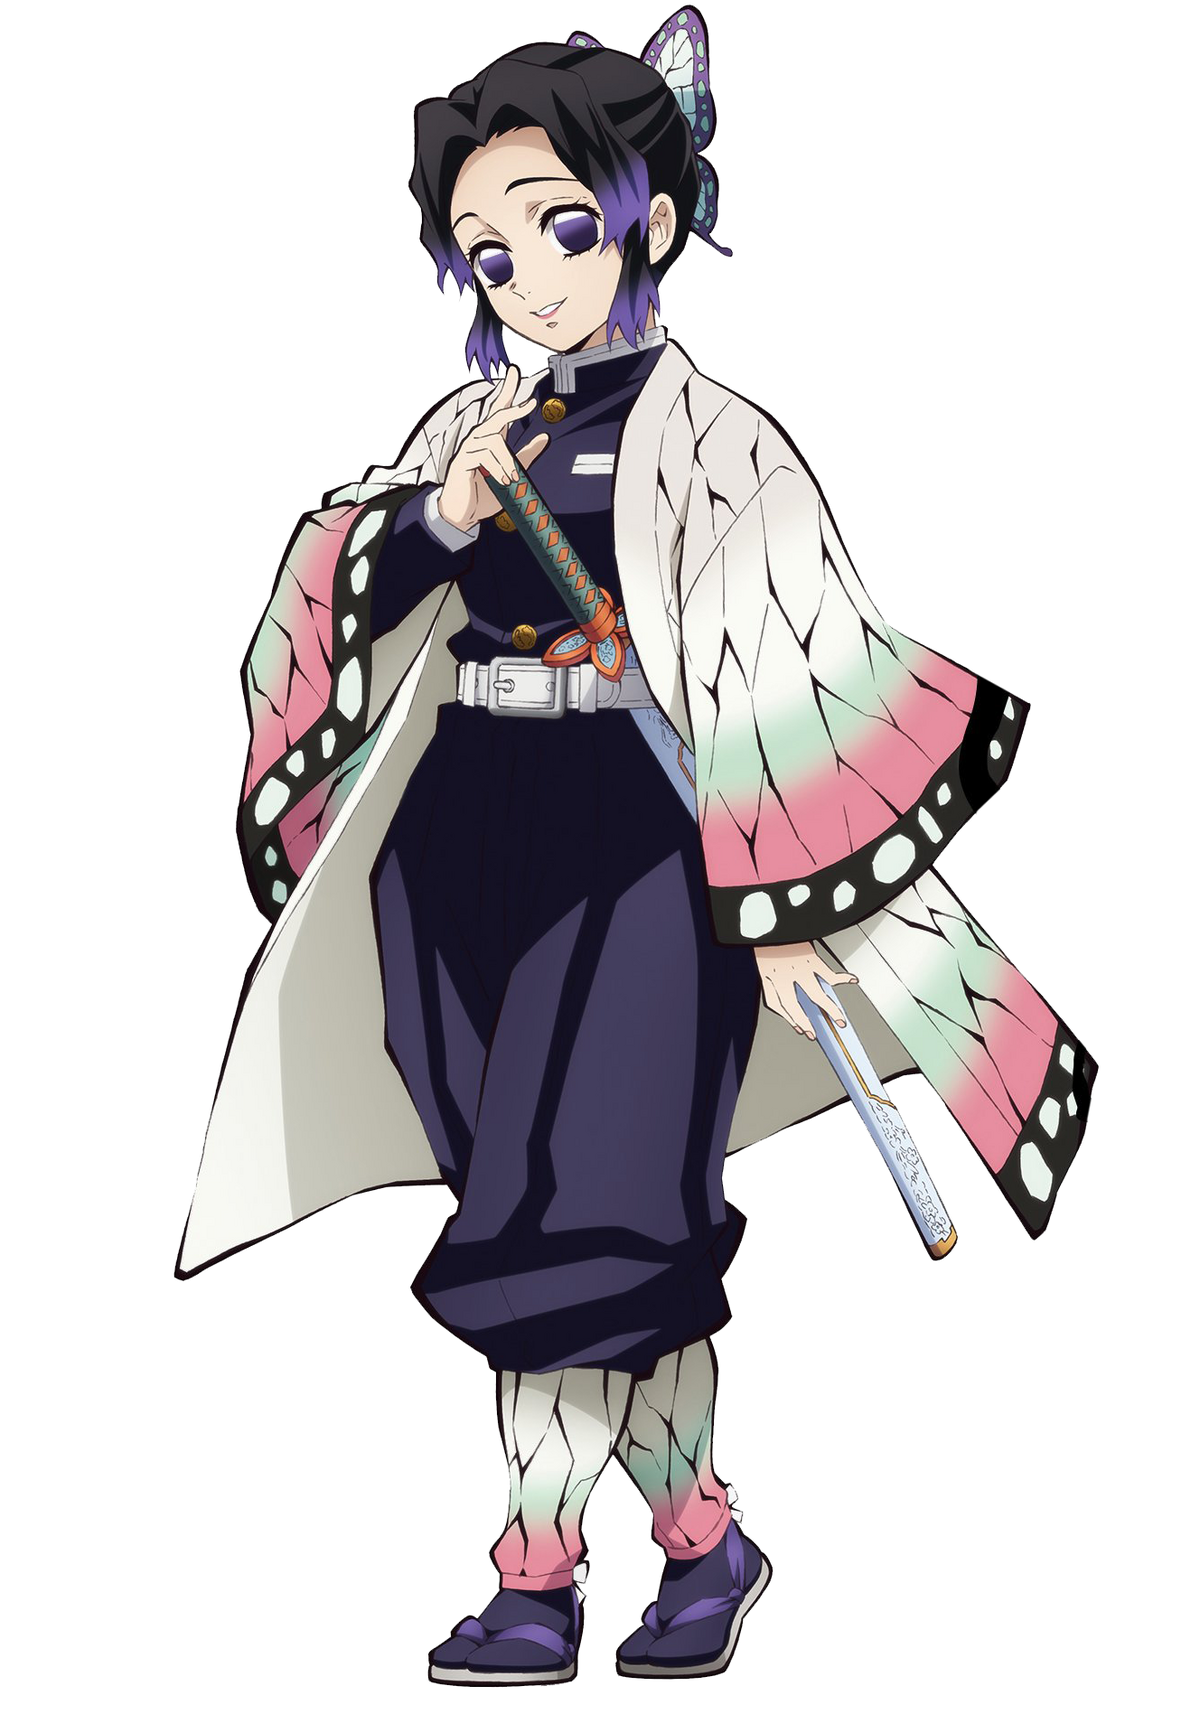 Kochou Shinobu là một trong những nhân vật được yêu thích nhất trong truyện tranh Kimetsu no Yaiba. Với vẻ ngoài xinh đẹp cùng sức mạnh phi thường, Shinobu đã trở thành biểu tượng cho sự thanh lịch và quyền uy. Bức hình này sẽ giúp bạn thấy rõ hơn tinh thần kiên trì và nghị lực của Shinobu.